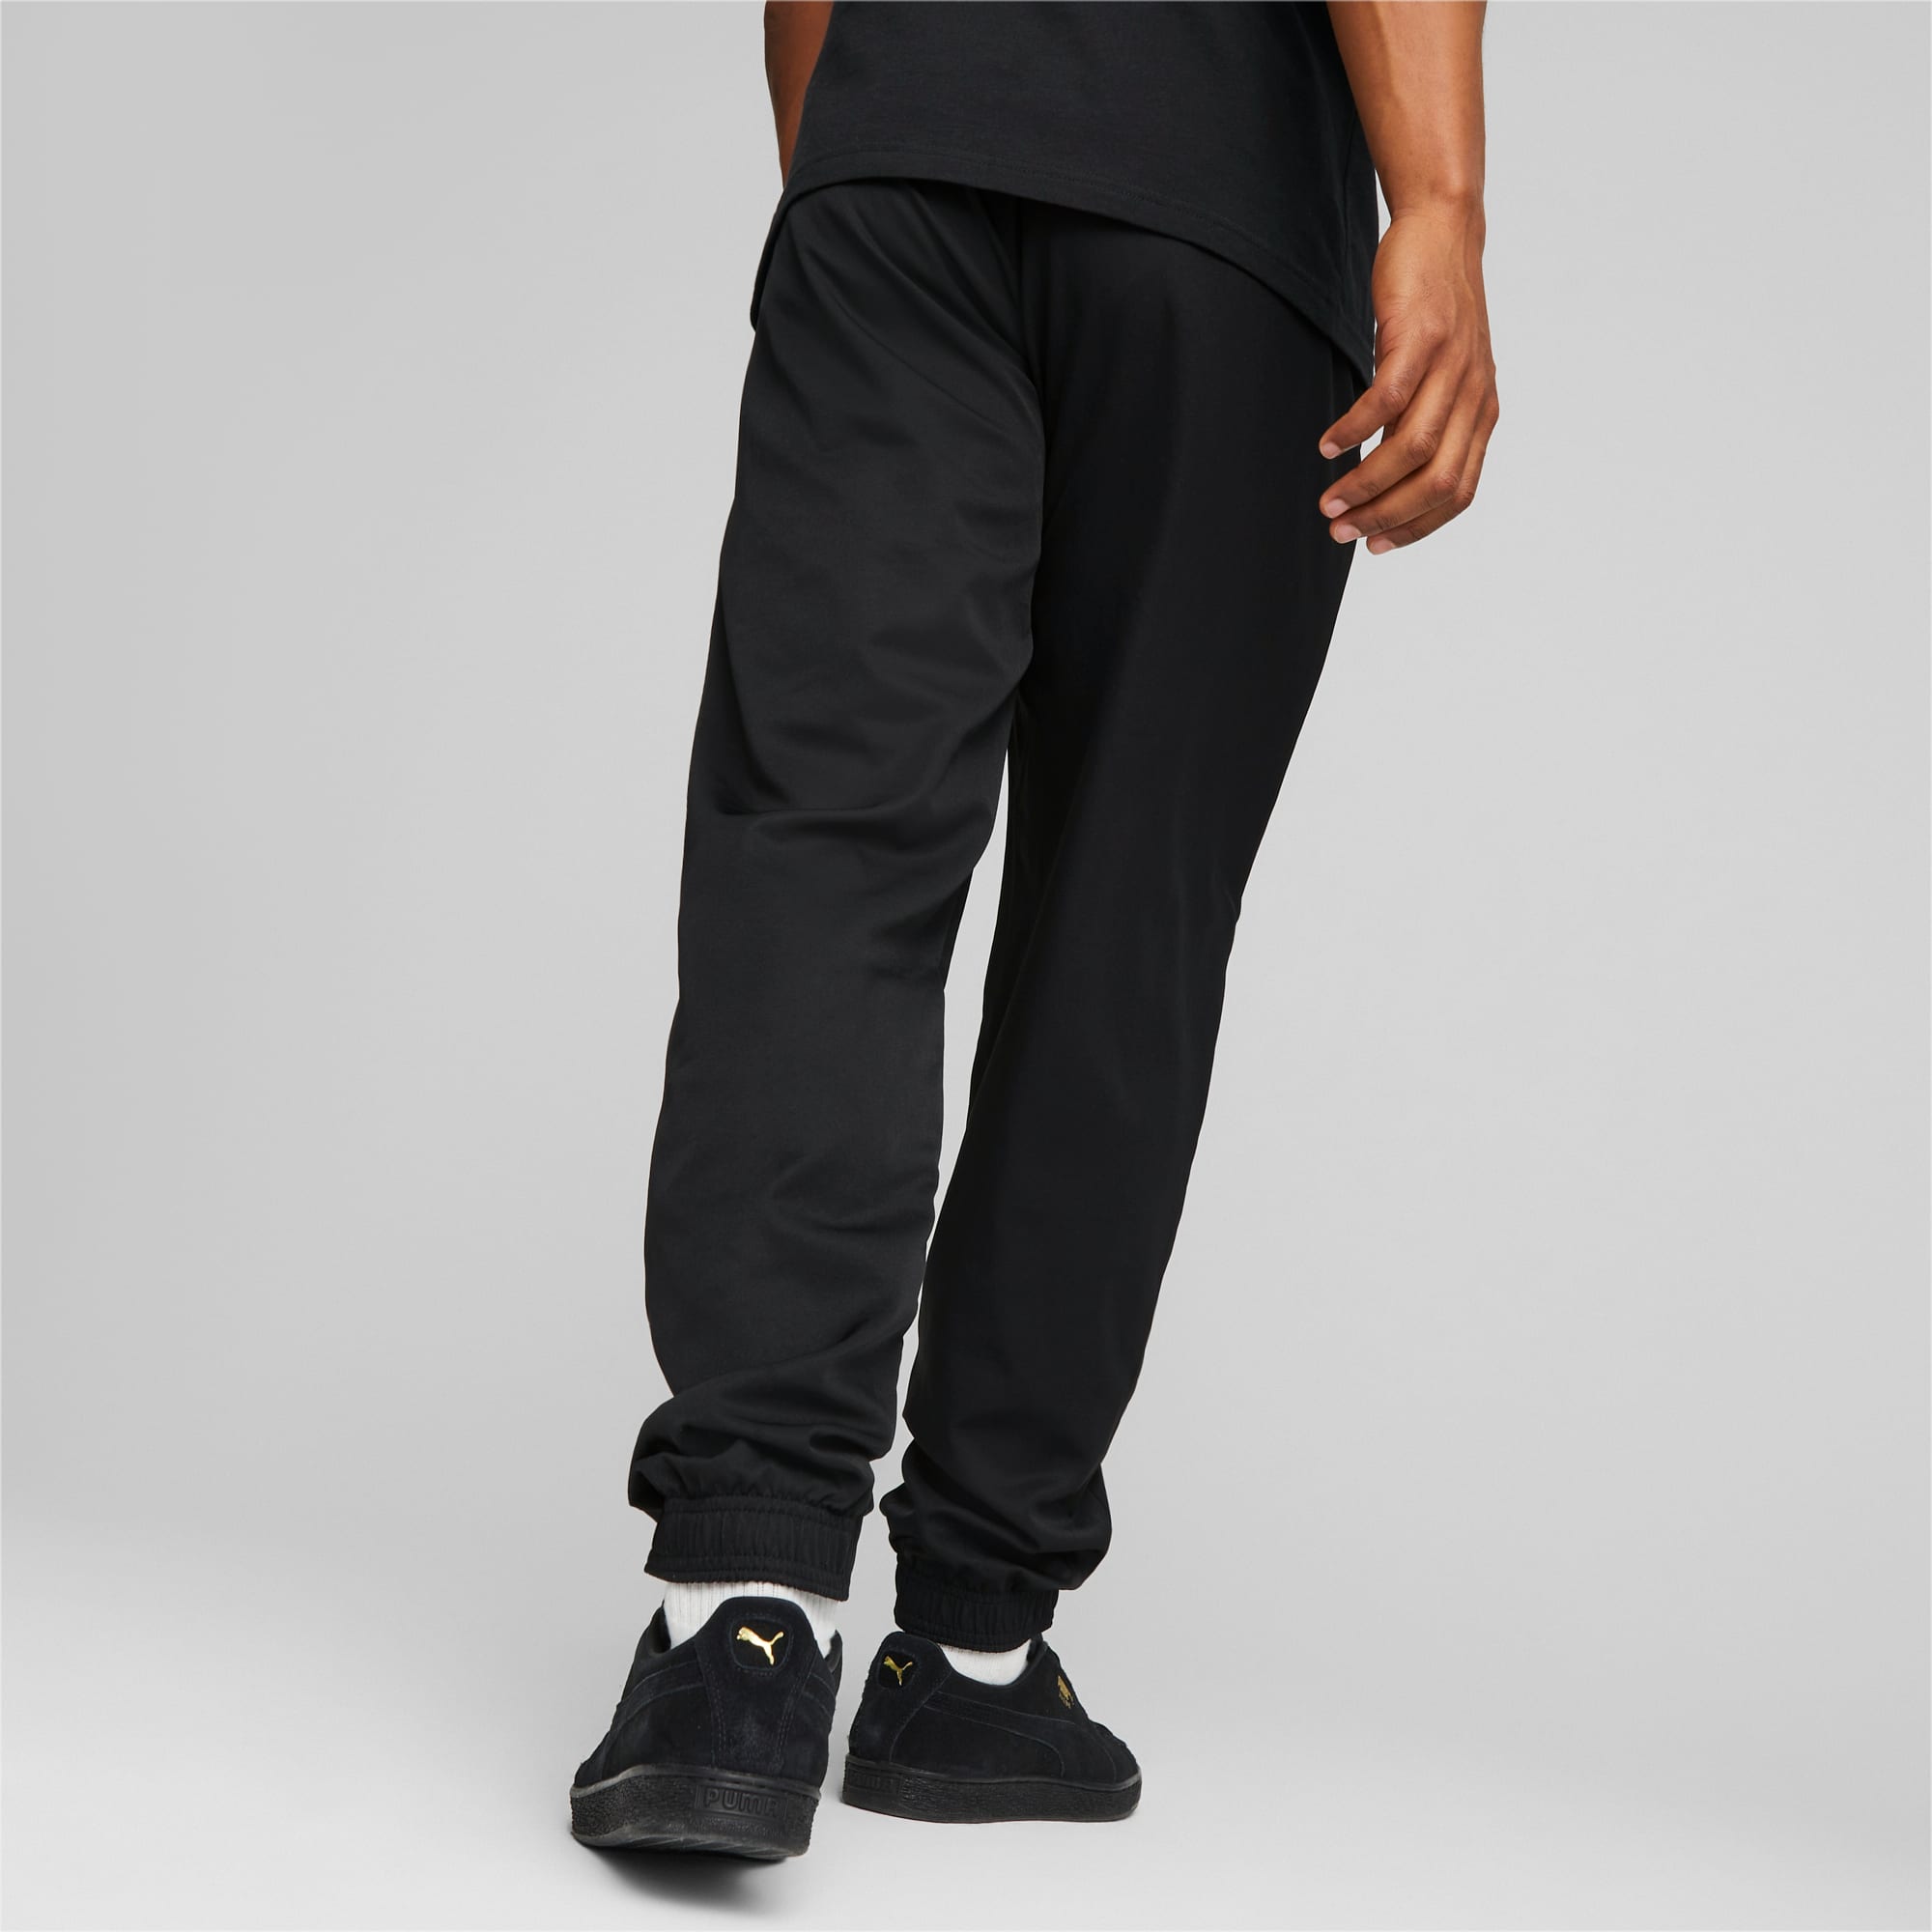 PUMA Active Woven Men's Pants, Black, Size XL, Clothing